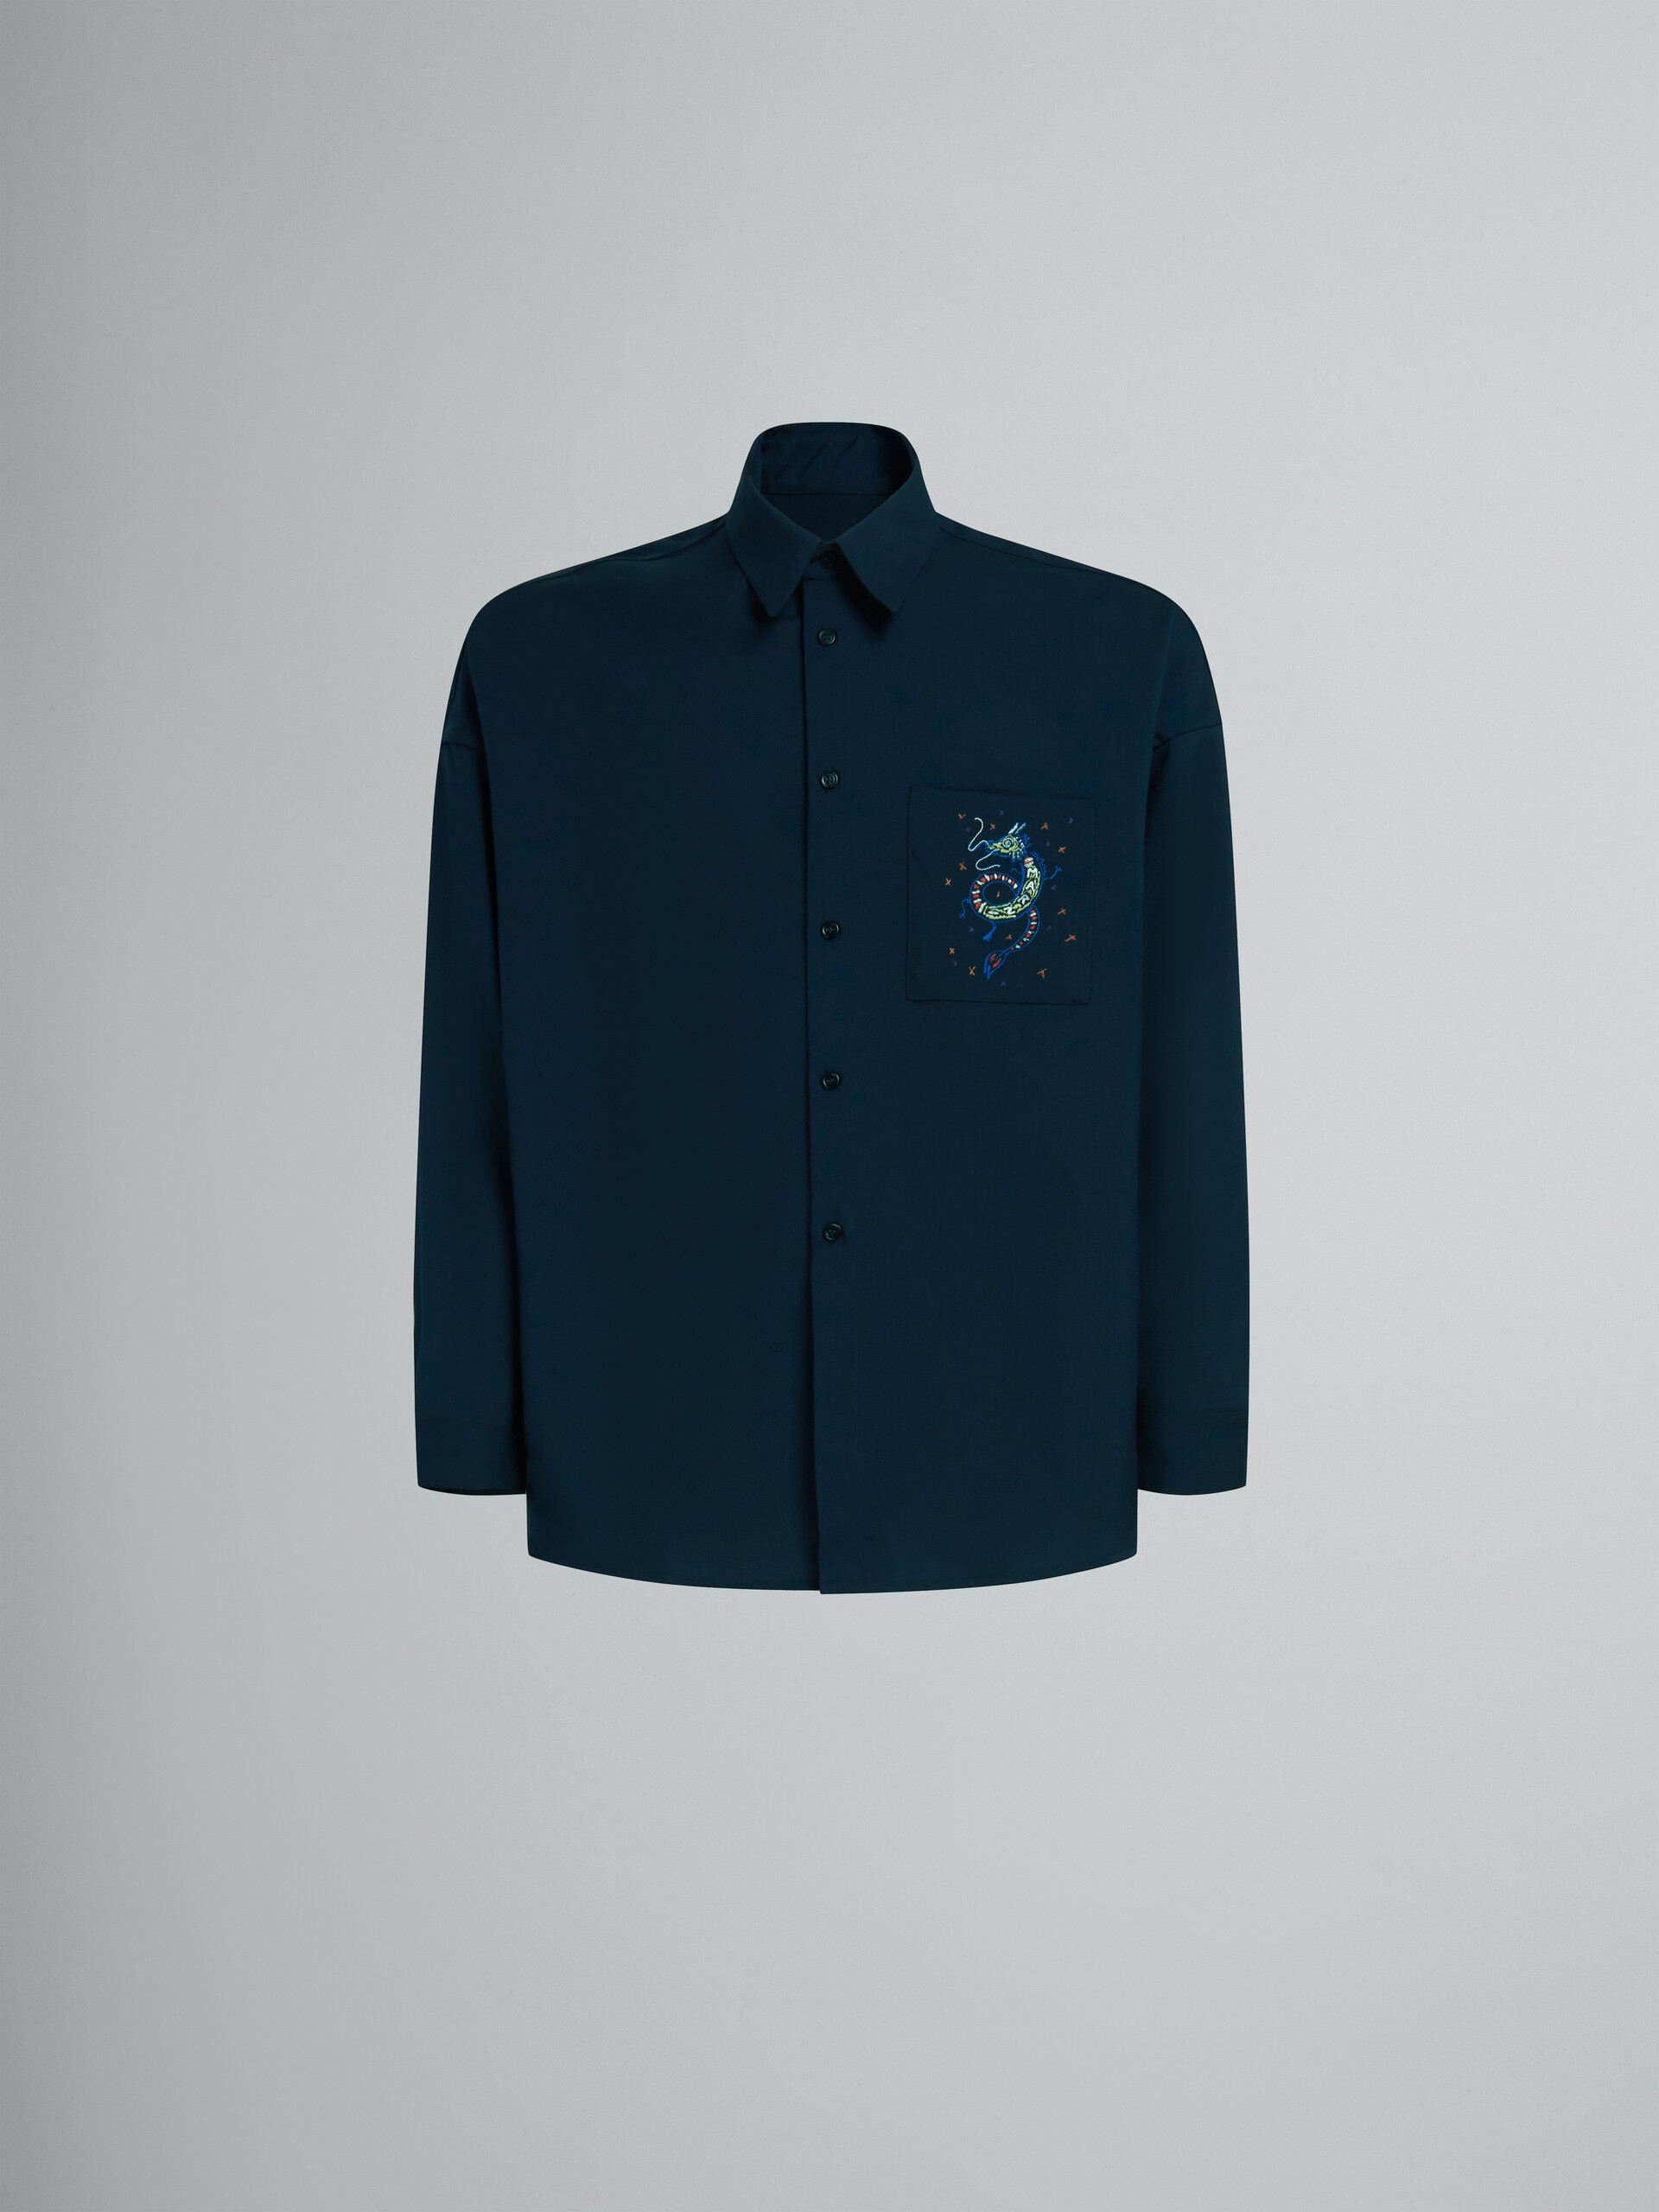 Camicia blu scuro in lana con drago ricamato - Camicie - Image 1